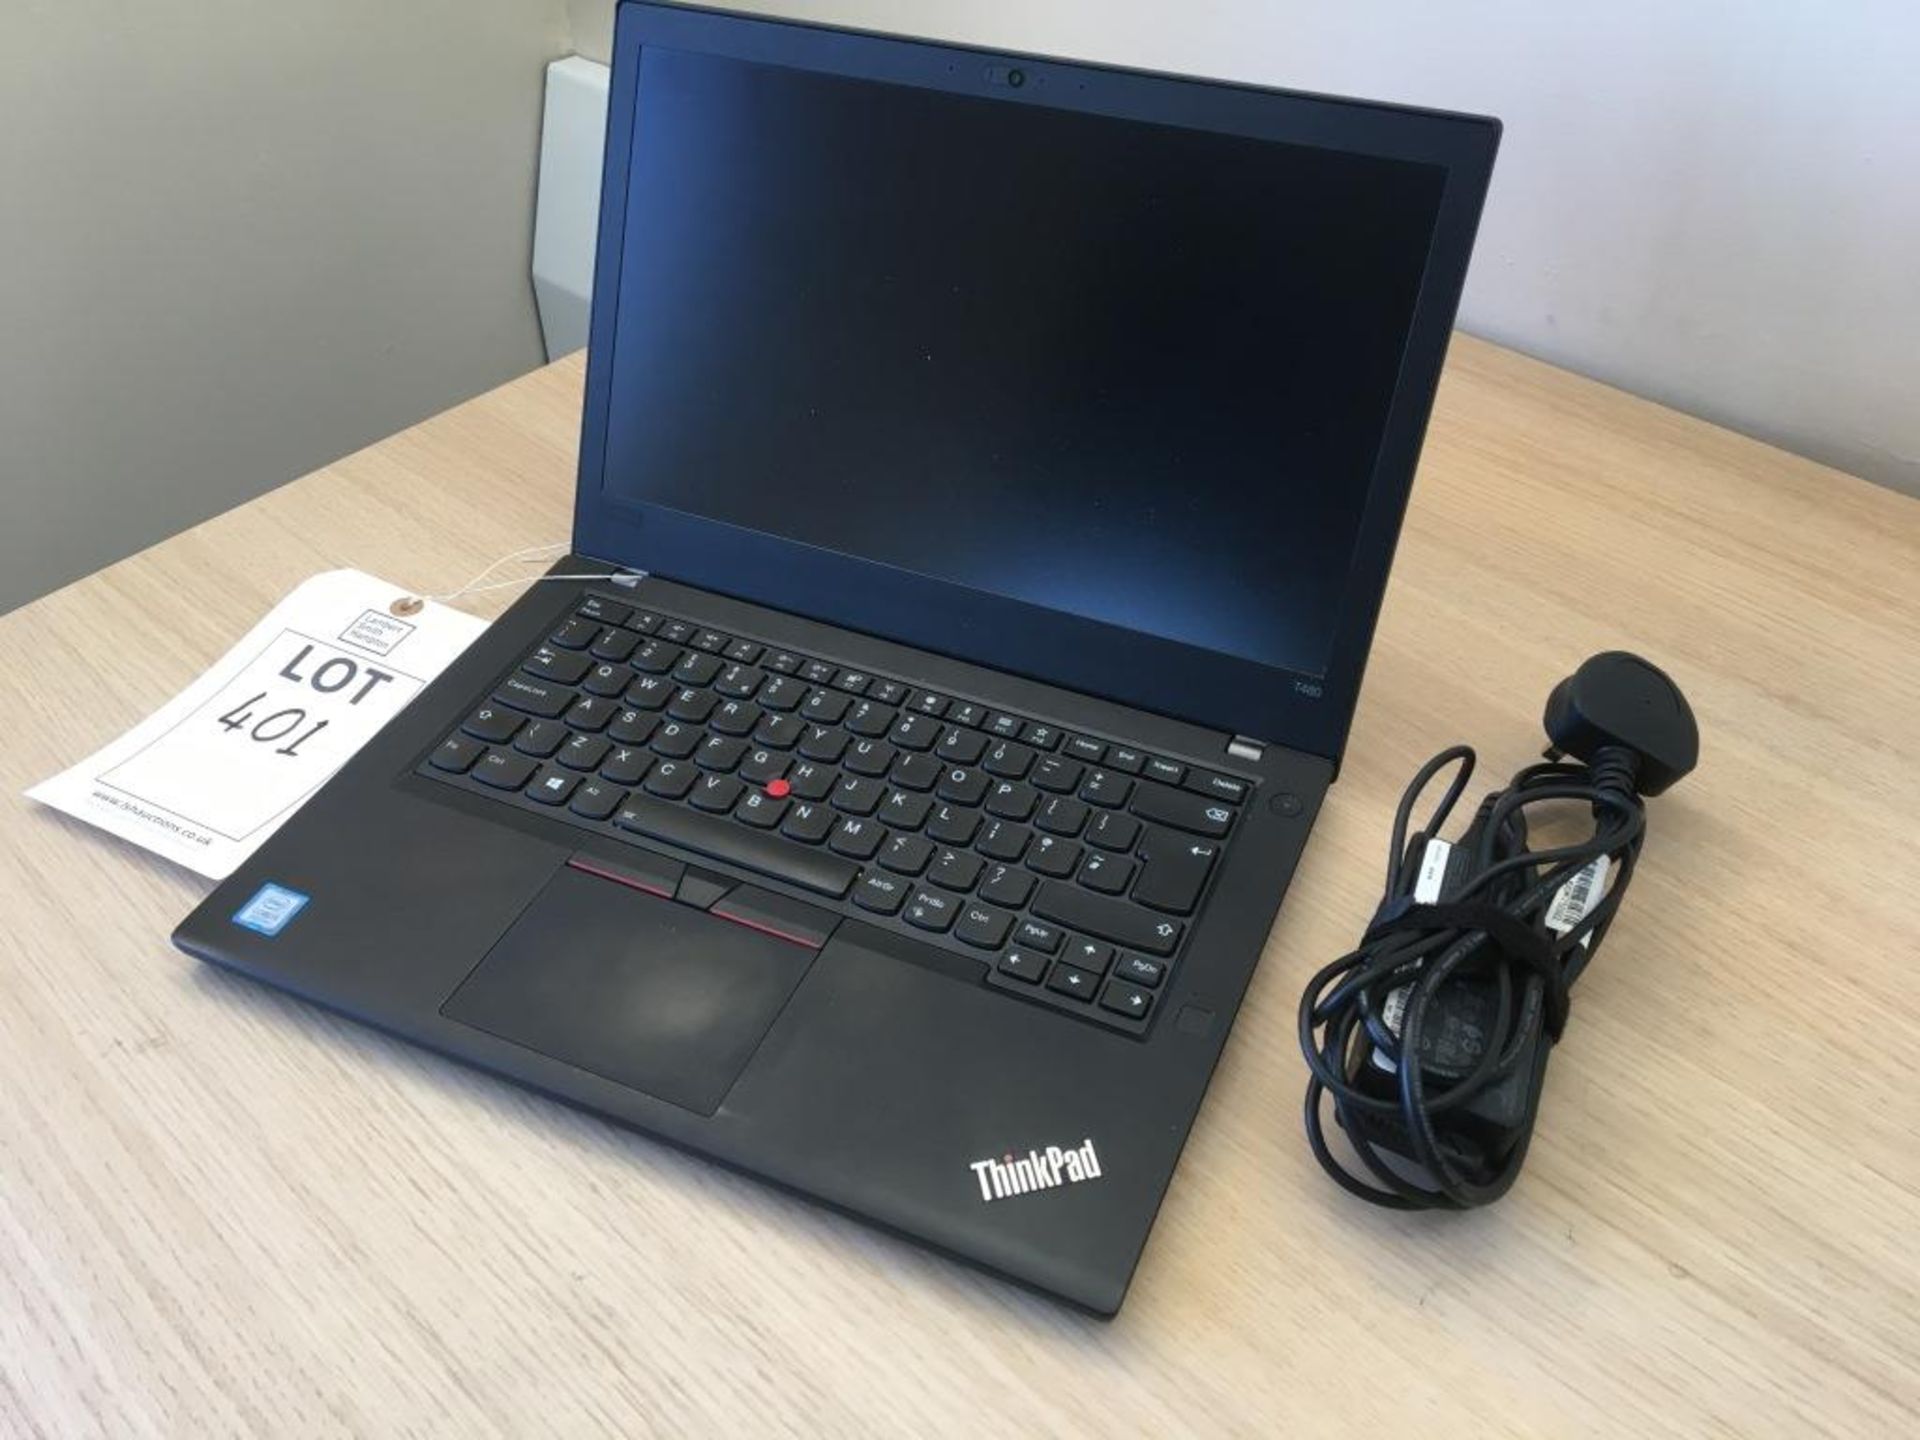 Lenovo ThinkPad T480 computer